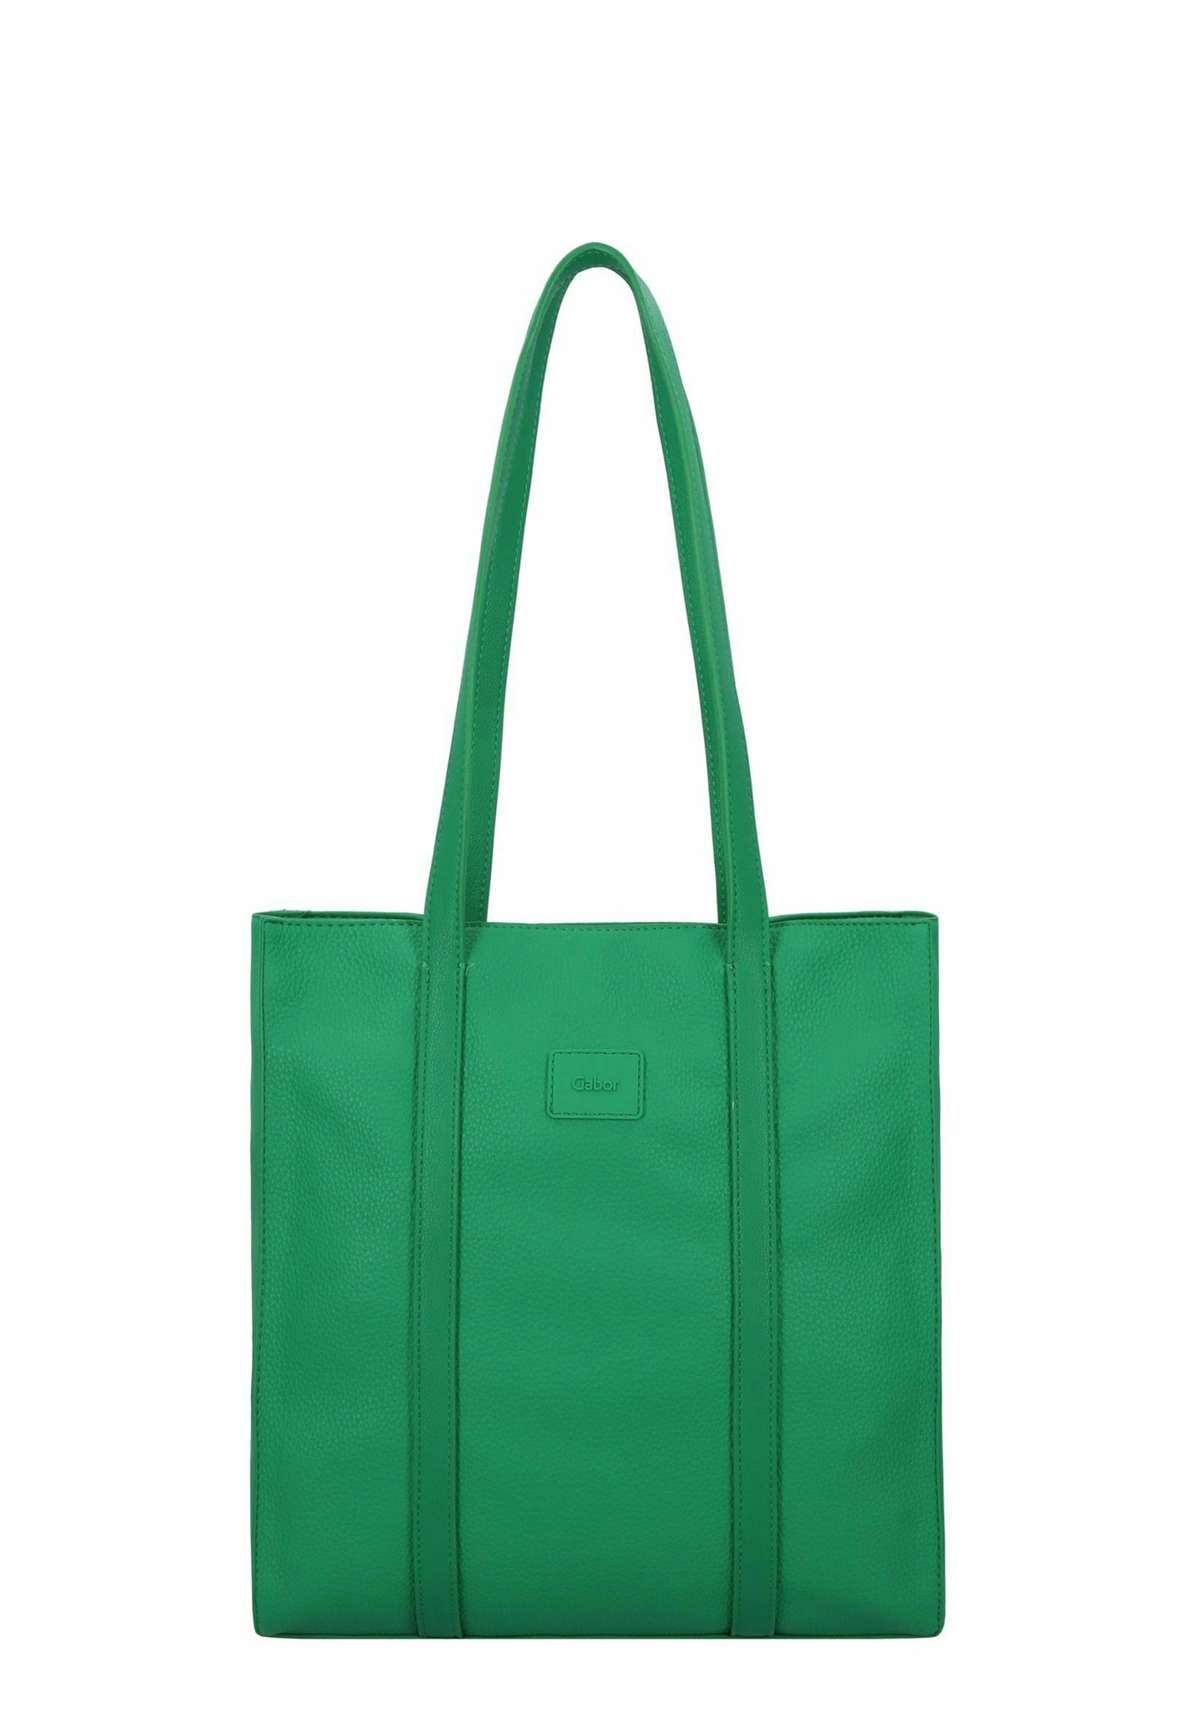 ELFIE - Shopping Bag ELFIE